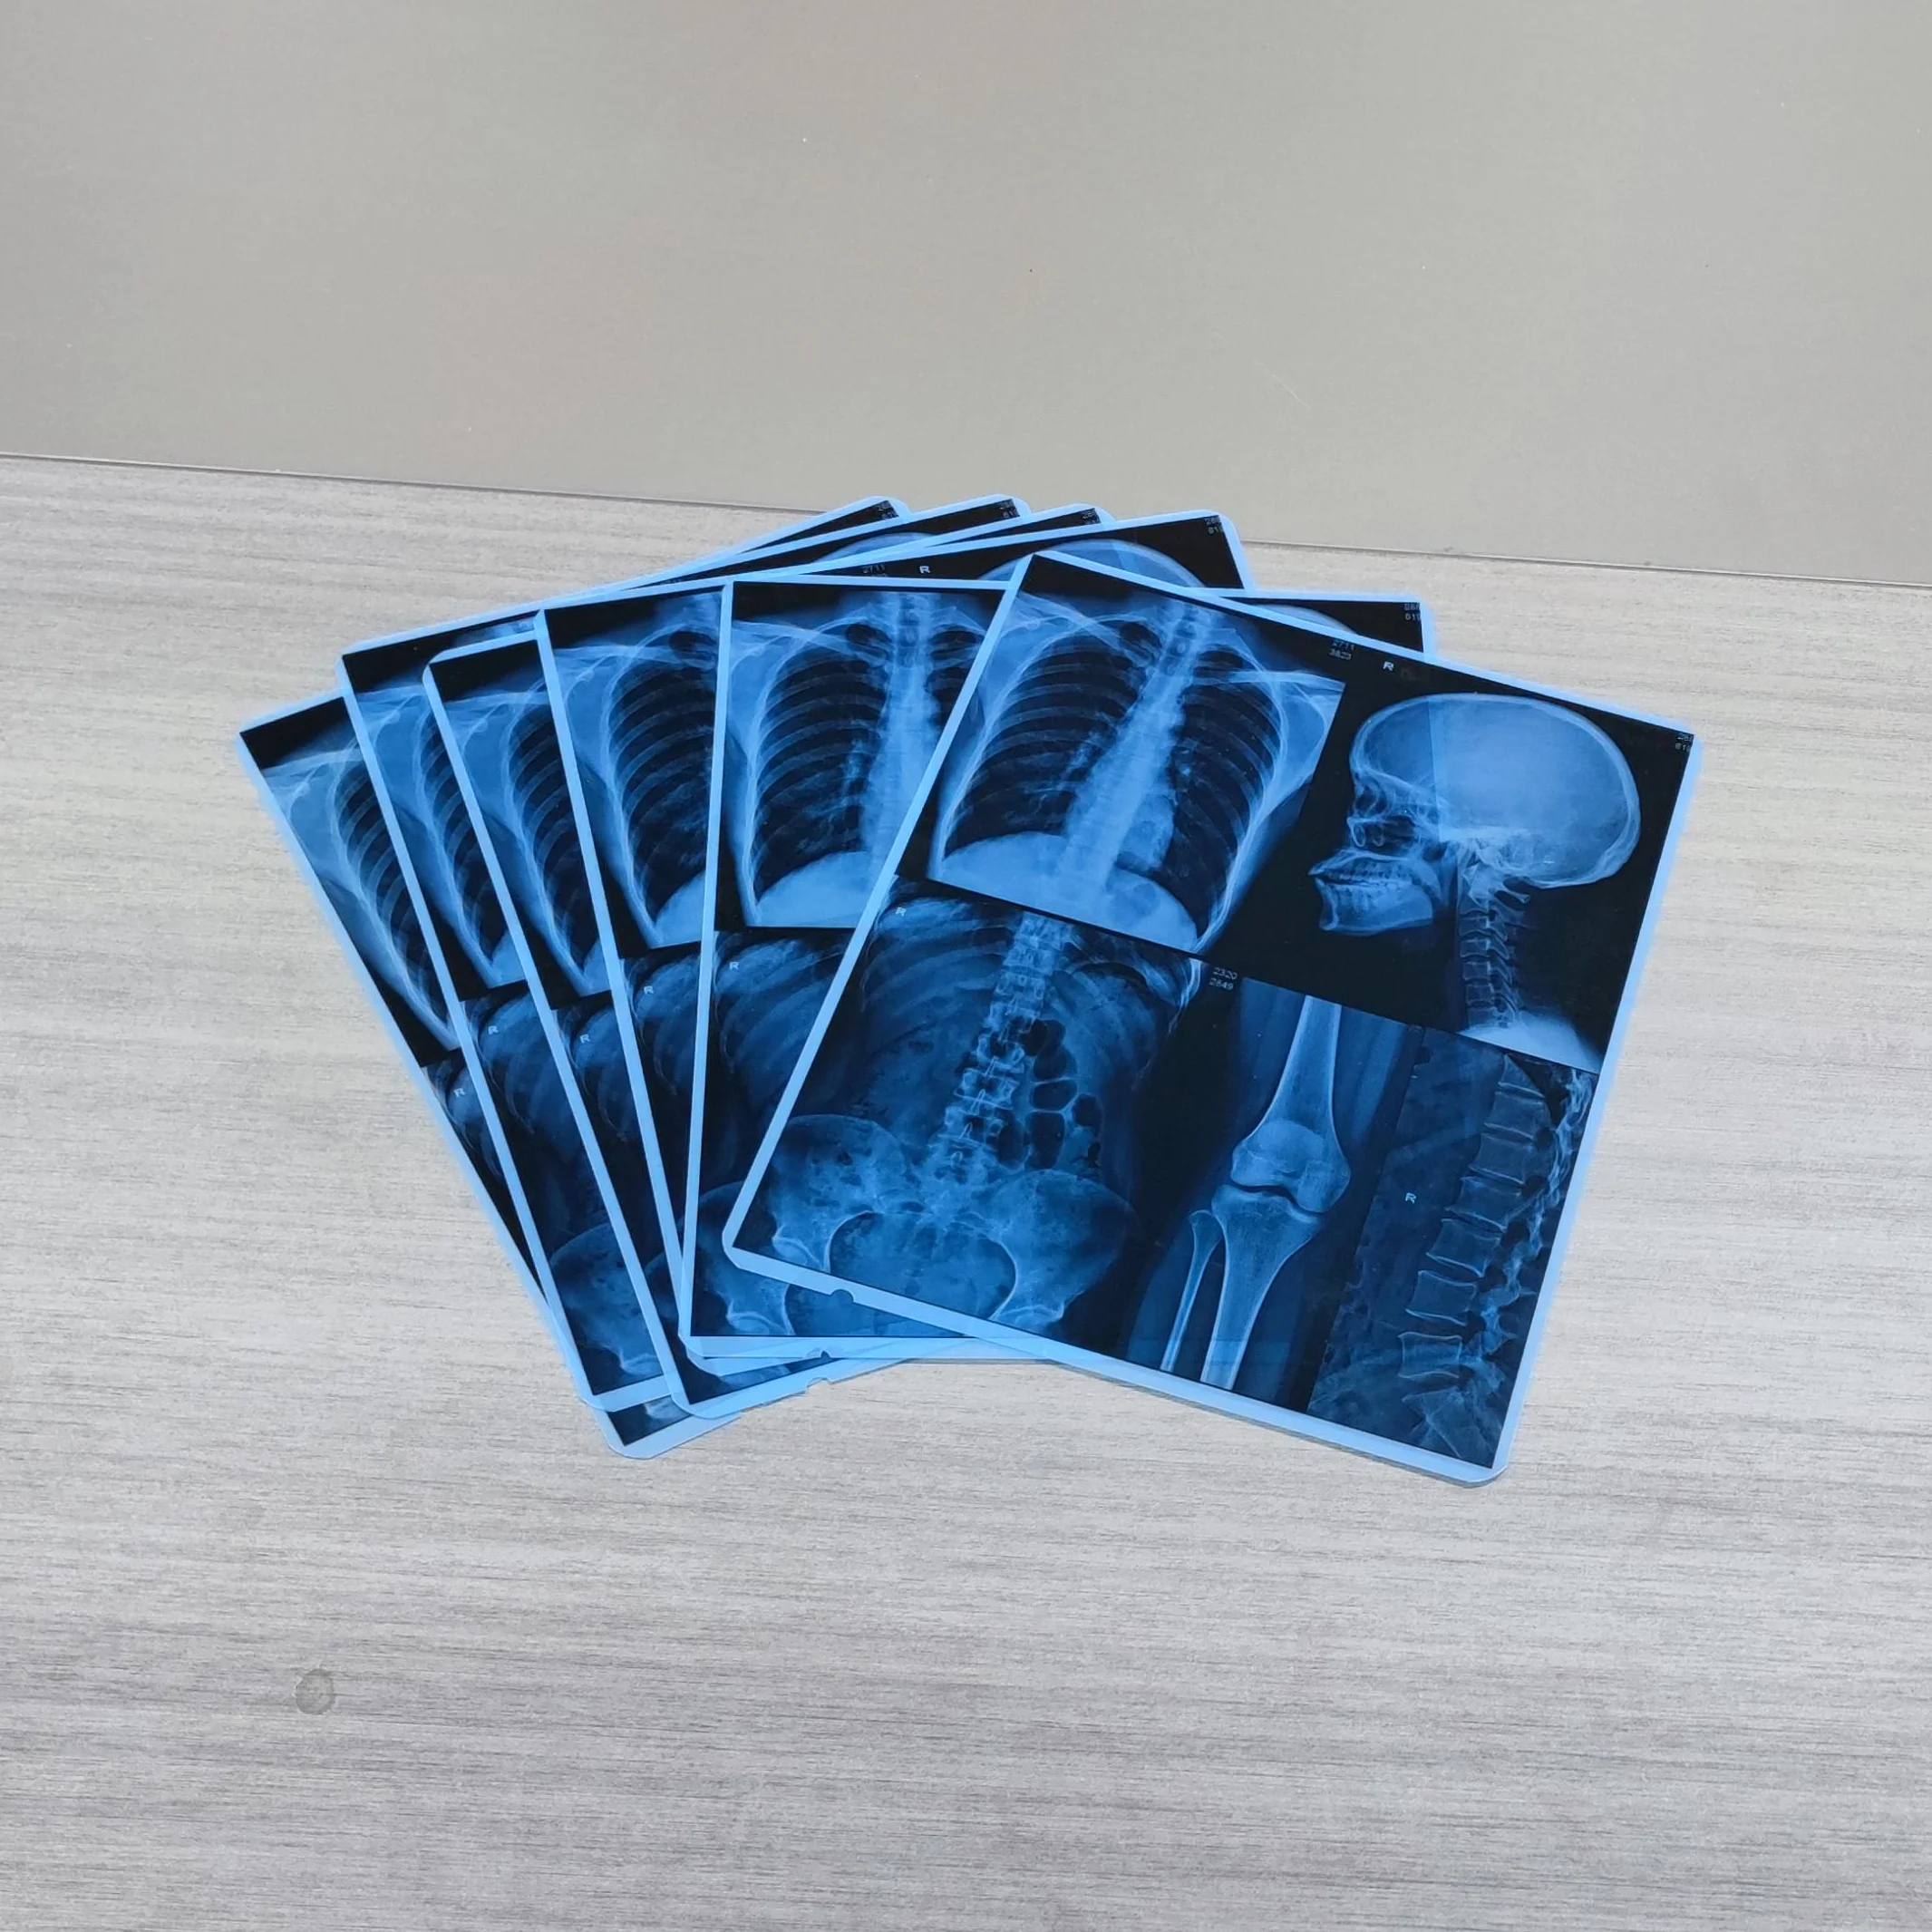 CT scan Medical x ray thermal film for fuji DI-HL Drypix imaging printer